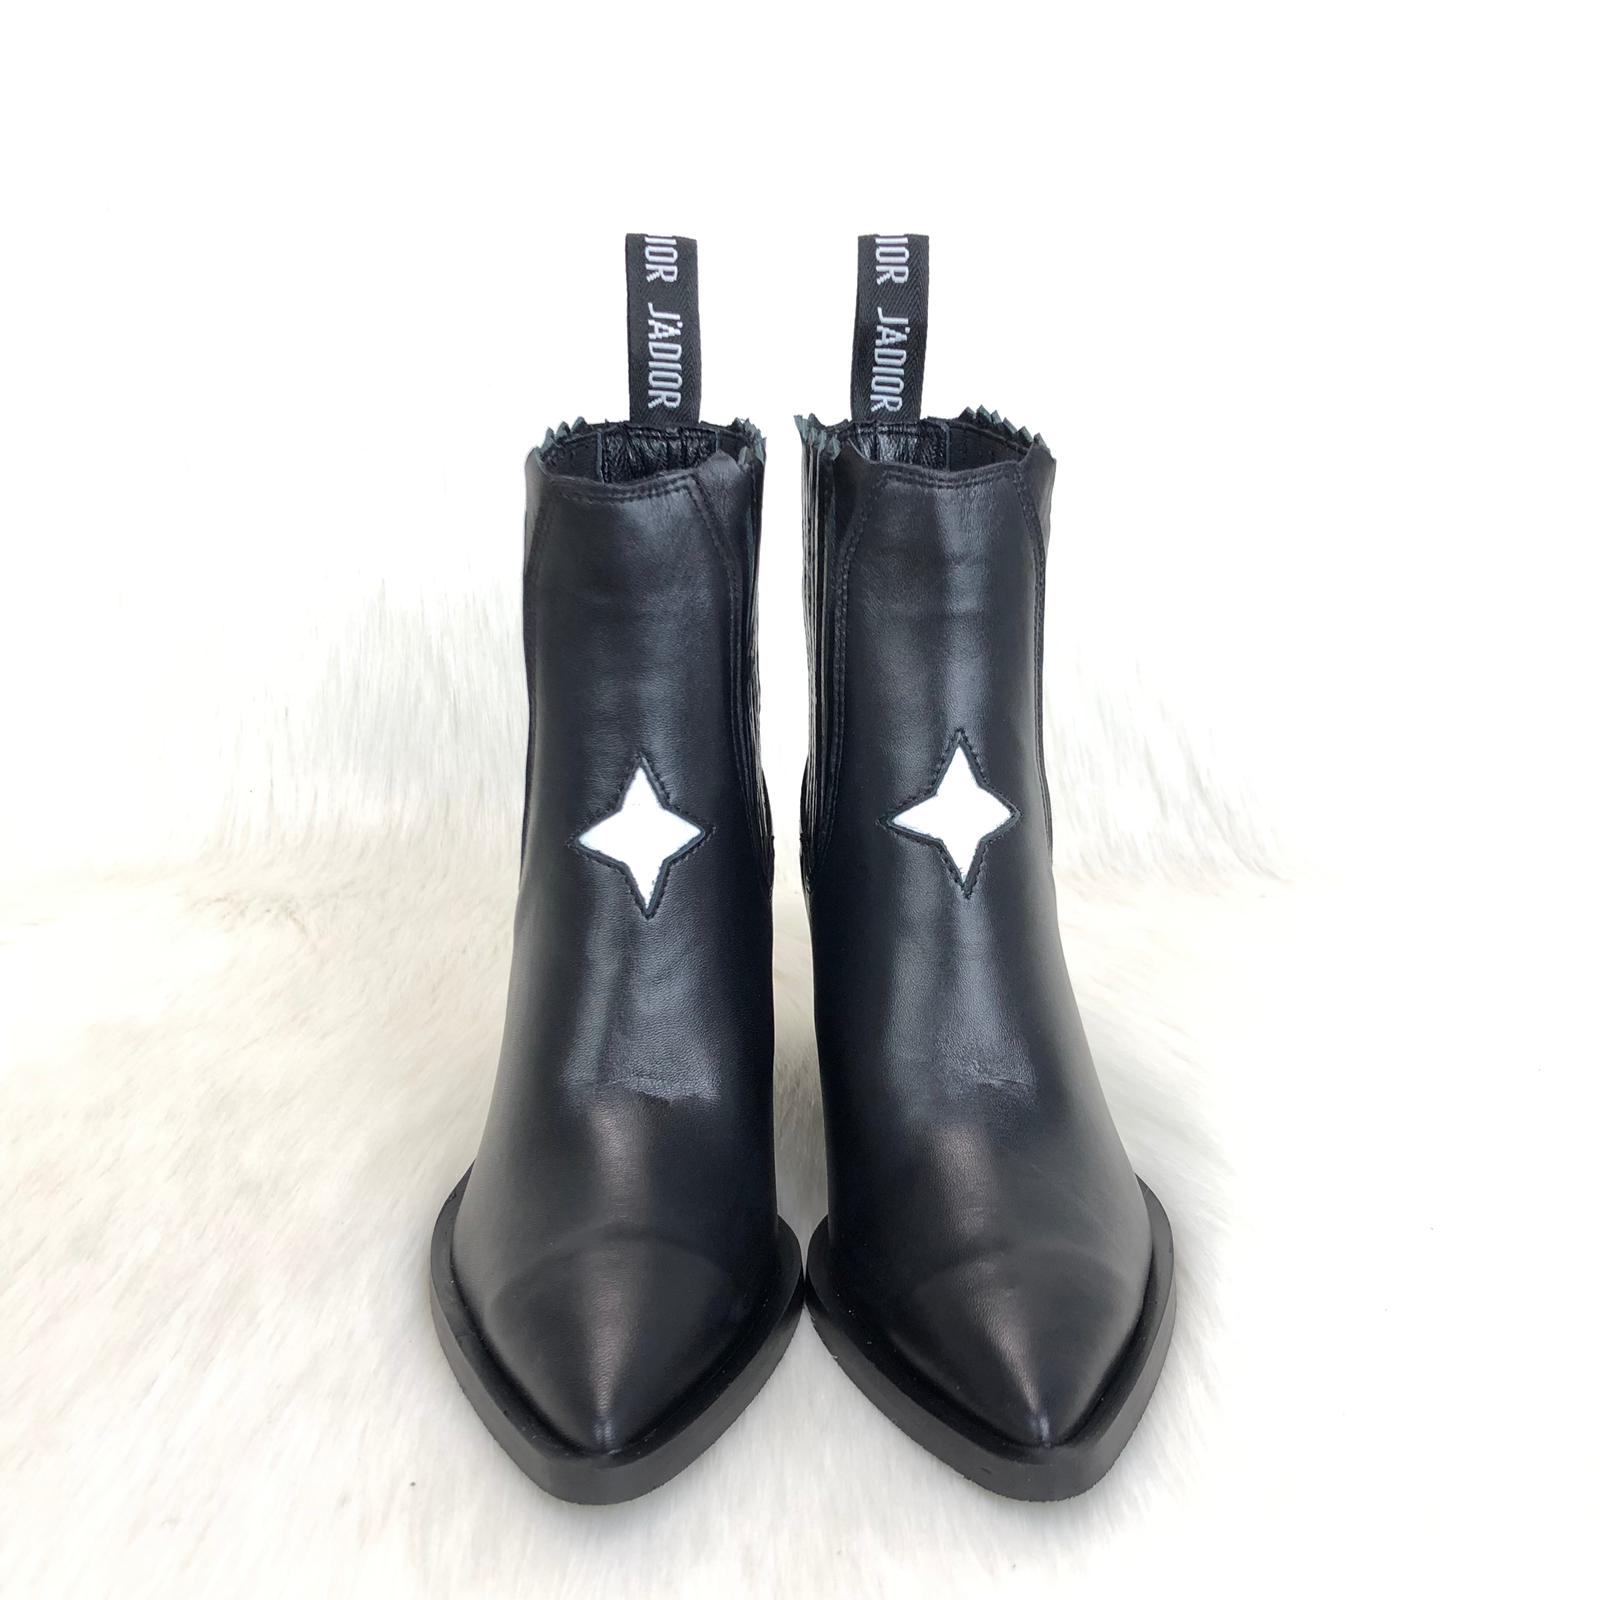 dior star boots